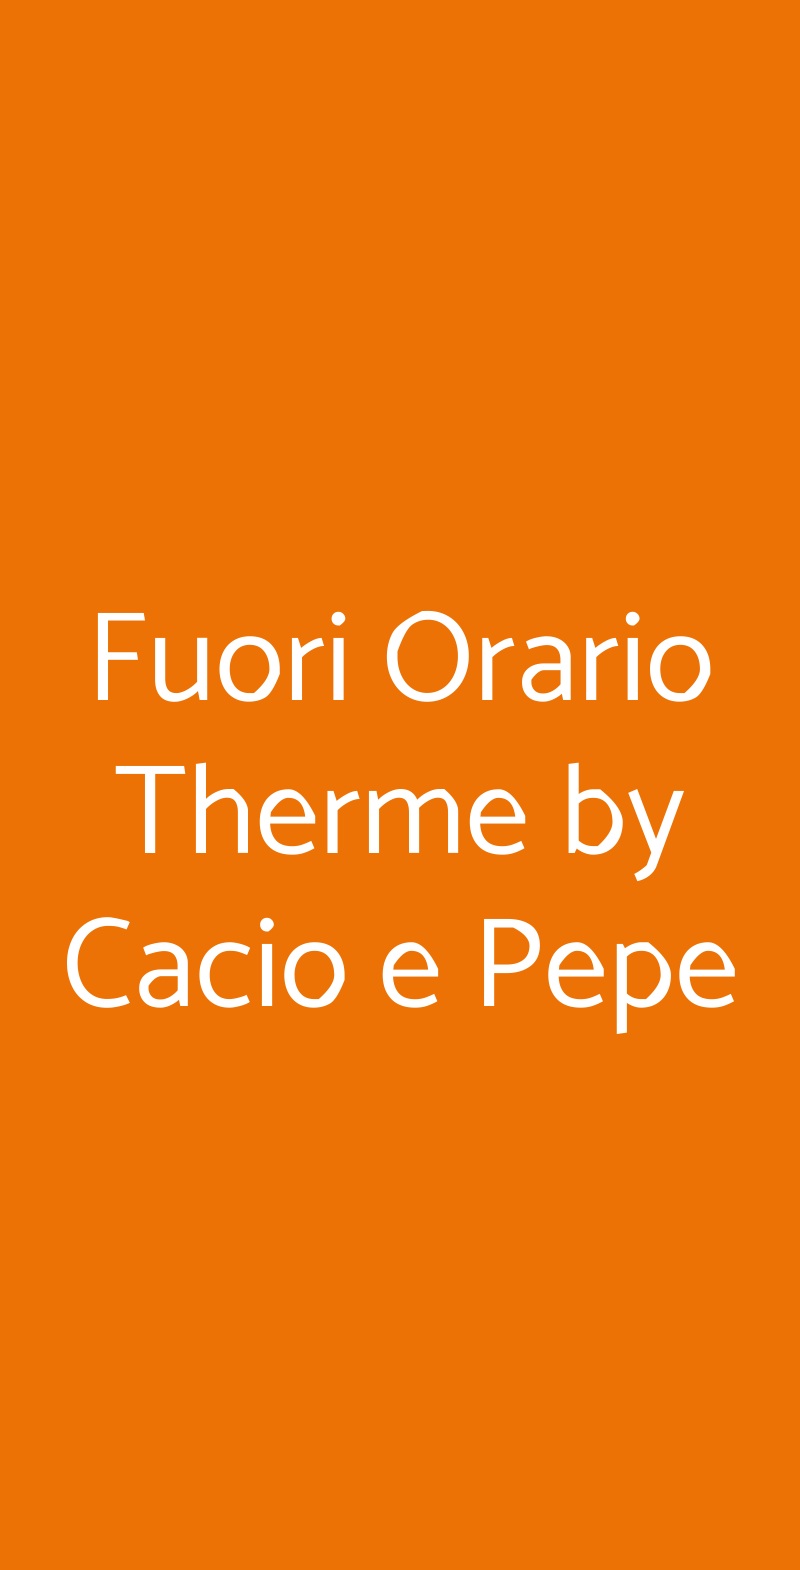 Fuori Orario Therme by Cacio e Pepe Abano Terme menù 1 pagina